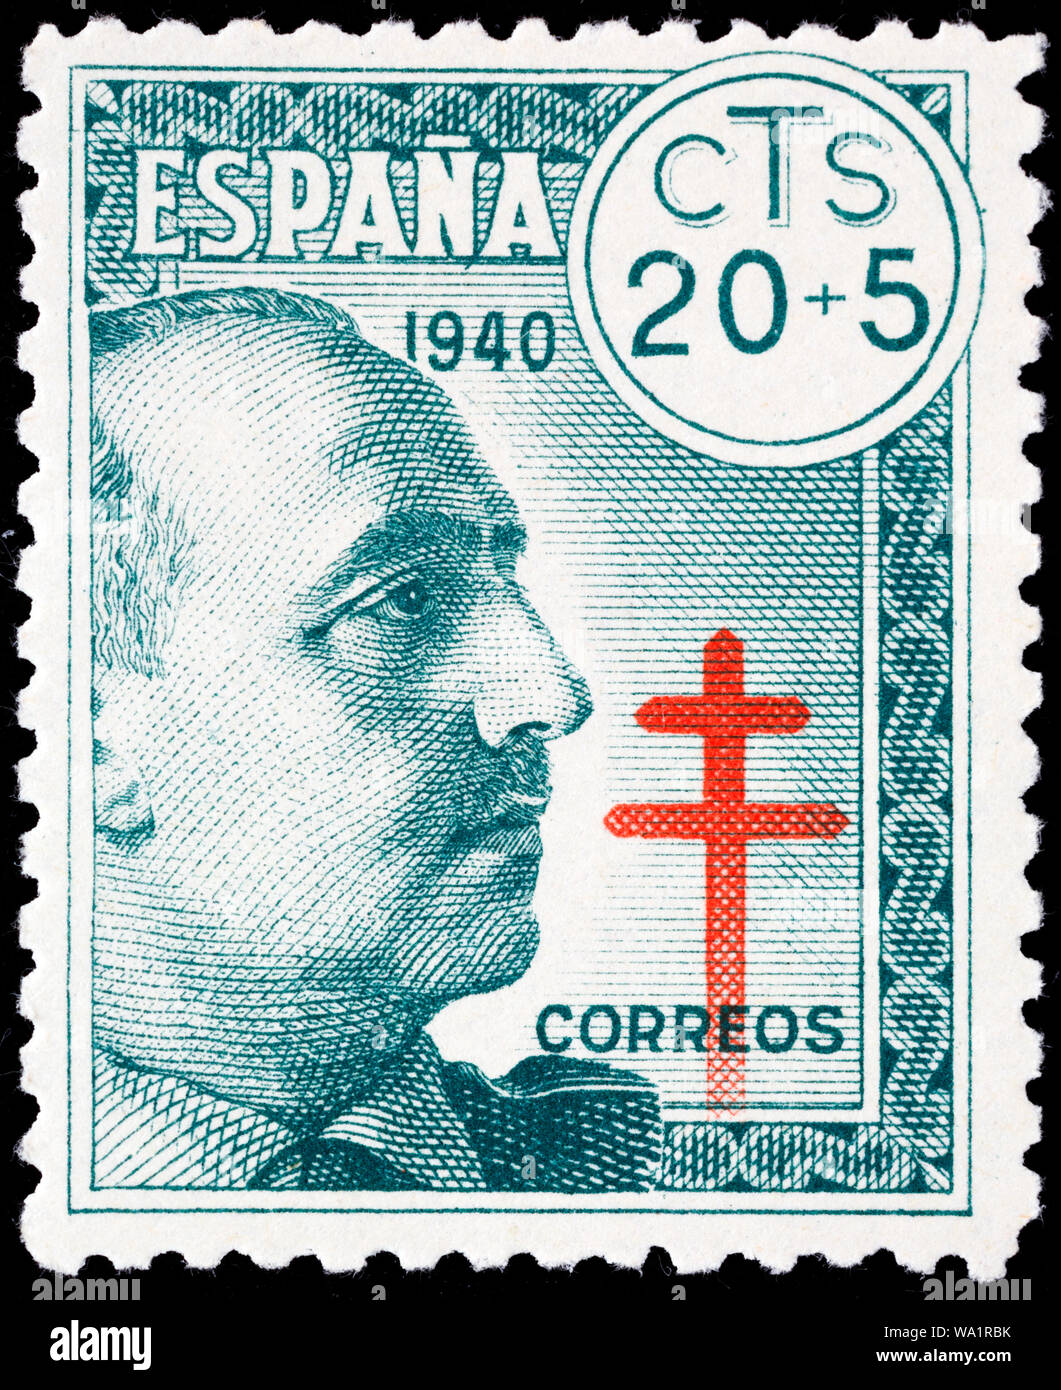 Francisco Franco Bahamonde (1892-1975), l'Espagnol général, homme politique, chef de l'État, le dictateur, Caudillo, croix de Lorraine, timbre-poste, Espagne, 1940 Banque D'Images